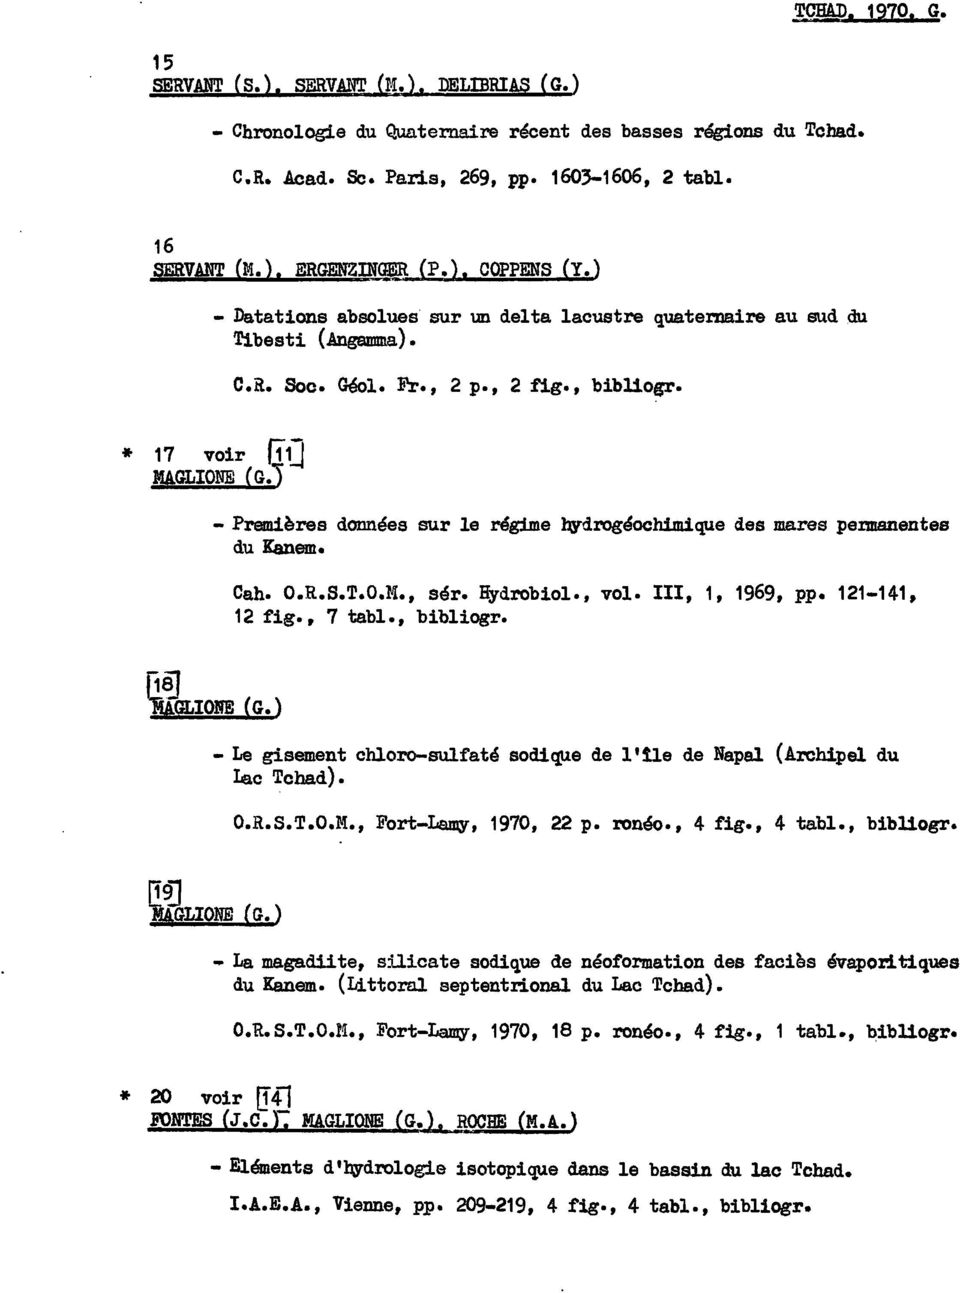 - Premières données sur le régime bydrogéoch1mique des mares permanentes du Kanem. Cah. O.R.S.T.O.M., sér. Hydrobiol., vol. III, 1, 1969, pp. 121-141, 12 fig., 7 tabl., bibliogr. ~GLIOIE (G.